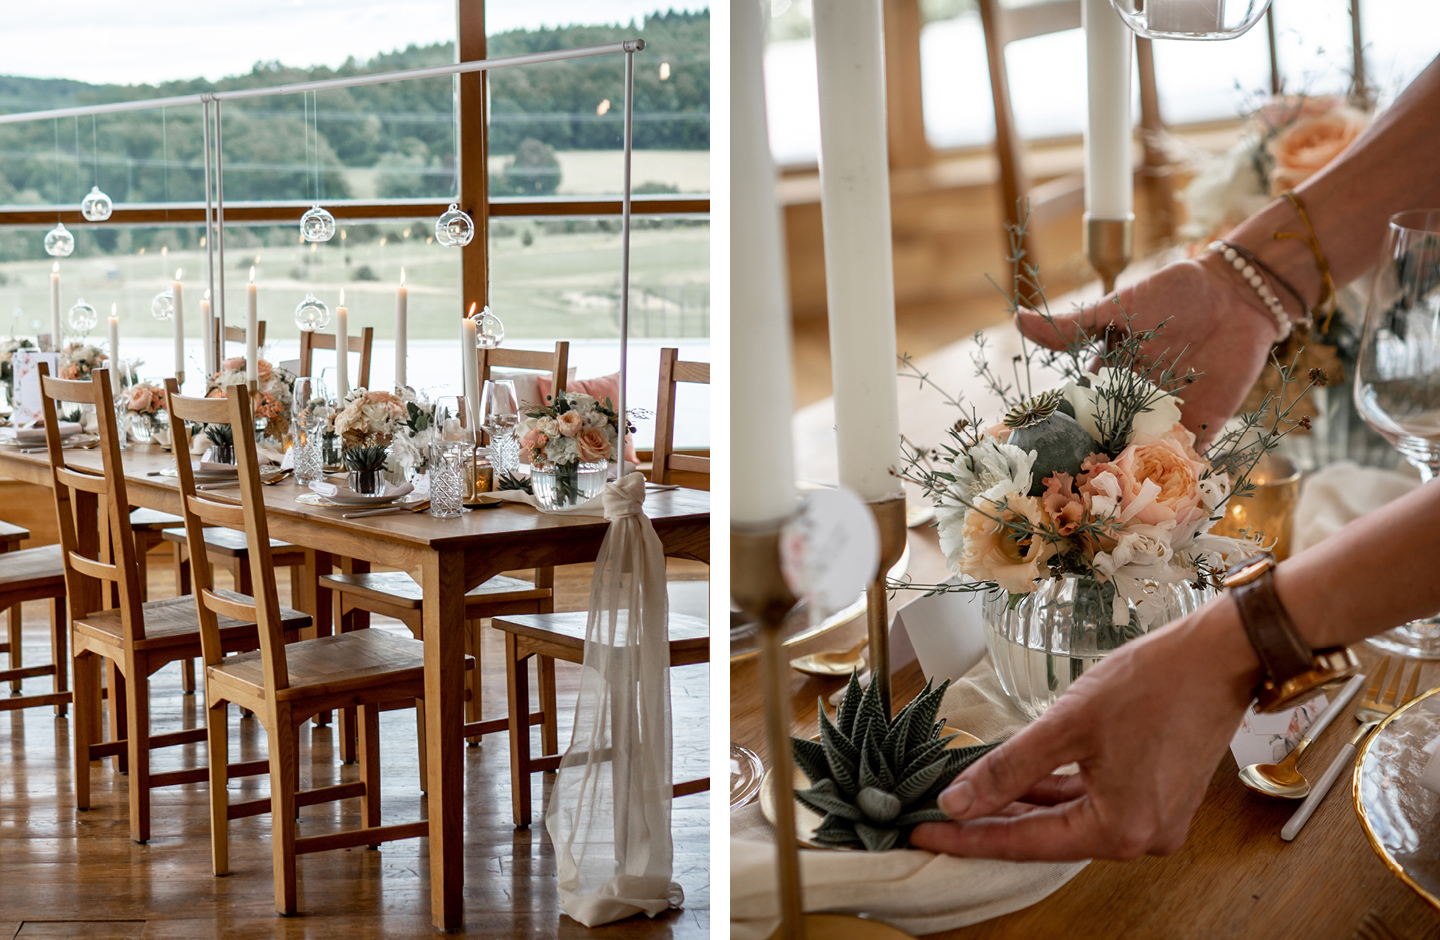 Holztisch ist als Hochzeitstafel mit Blumen in Weiß und Peach dekoriert.